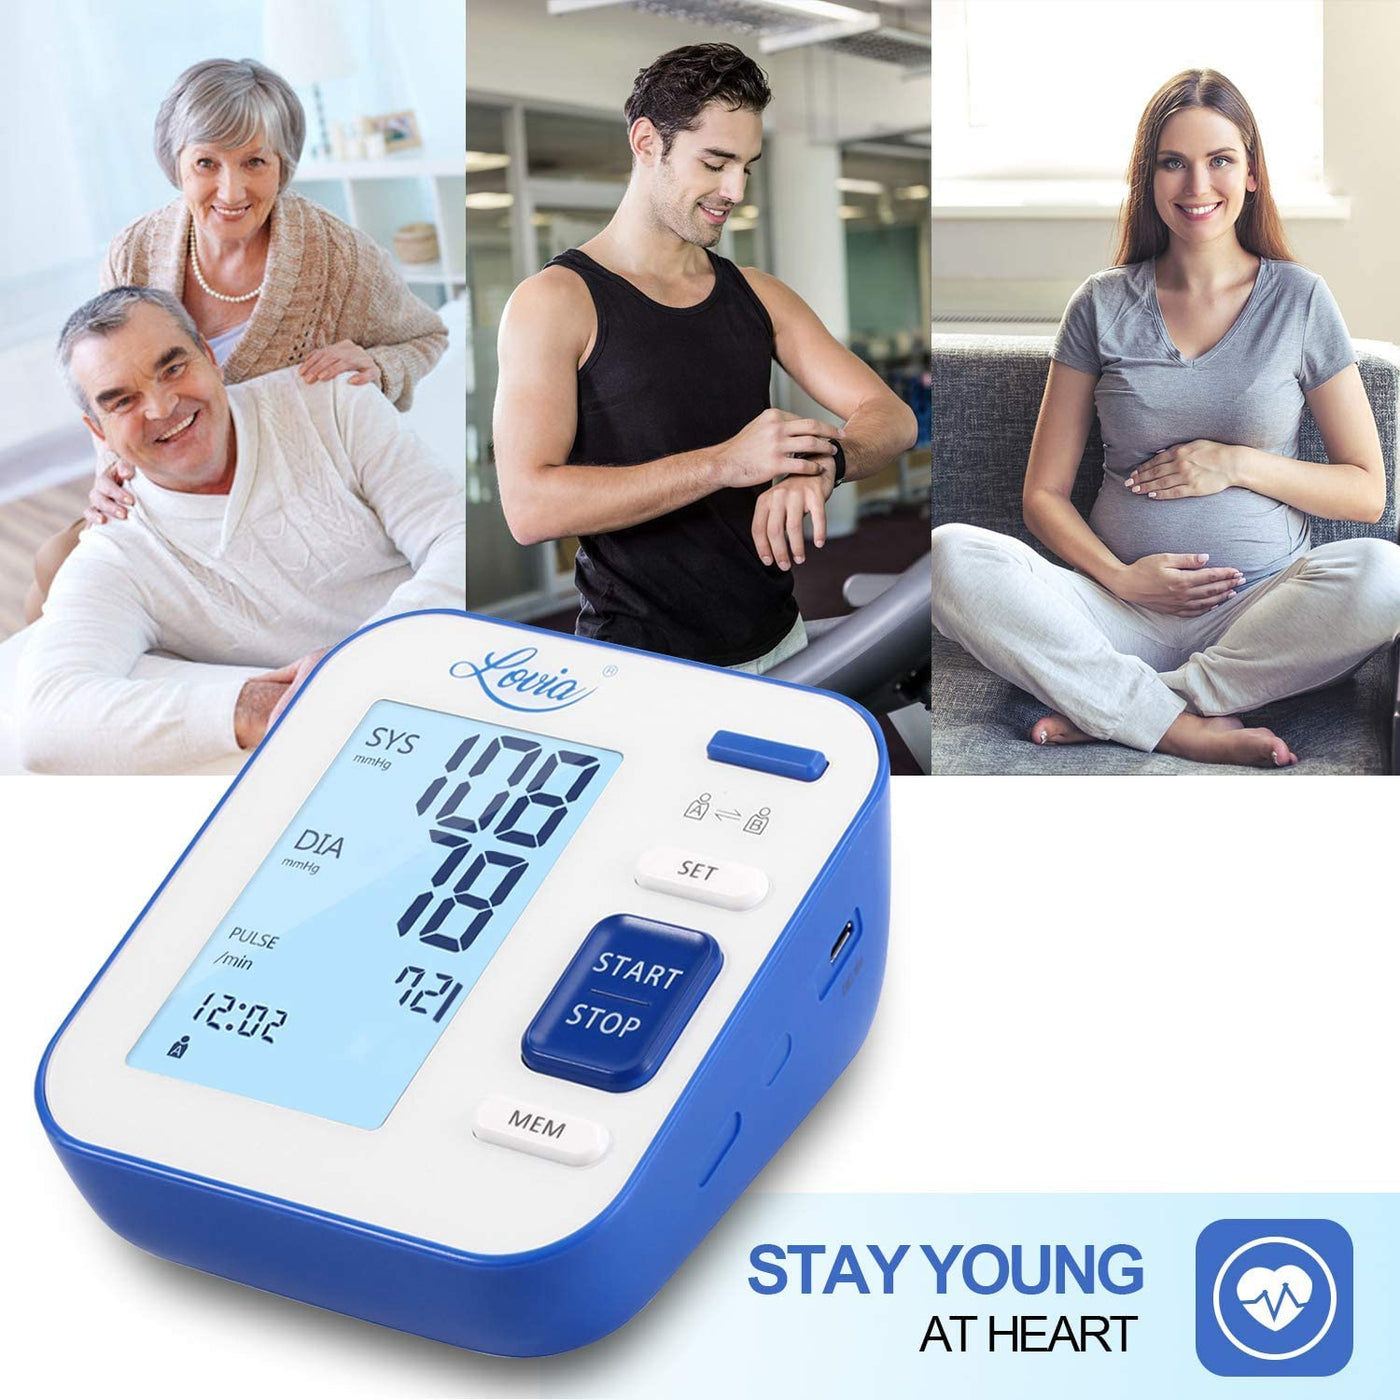 Lovia Intelligent Type Digital Blood Pressure Monitor w/ LCD